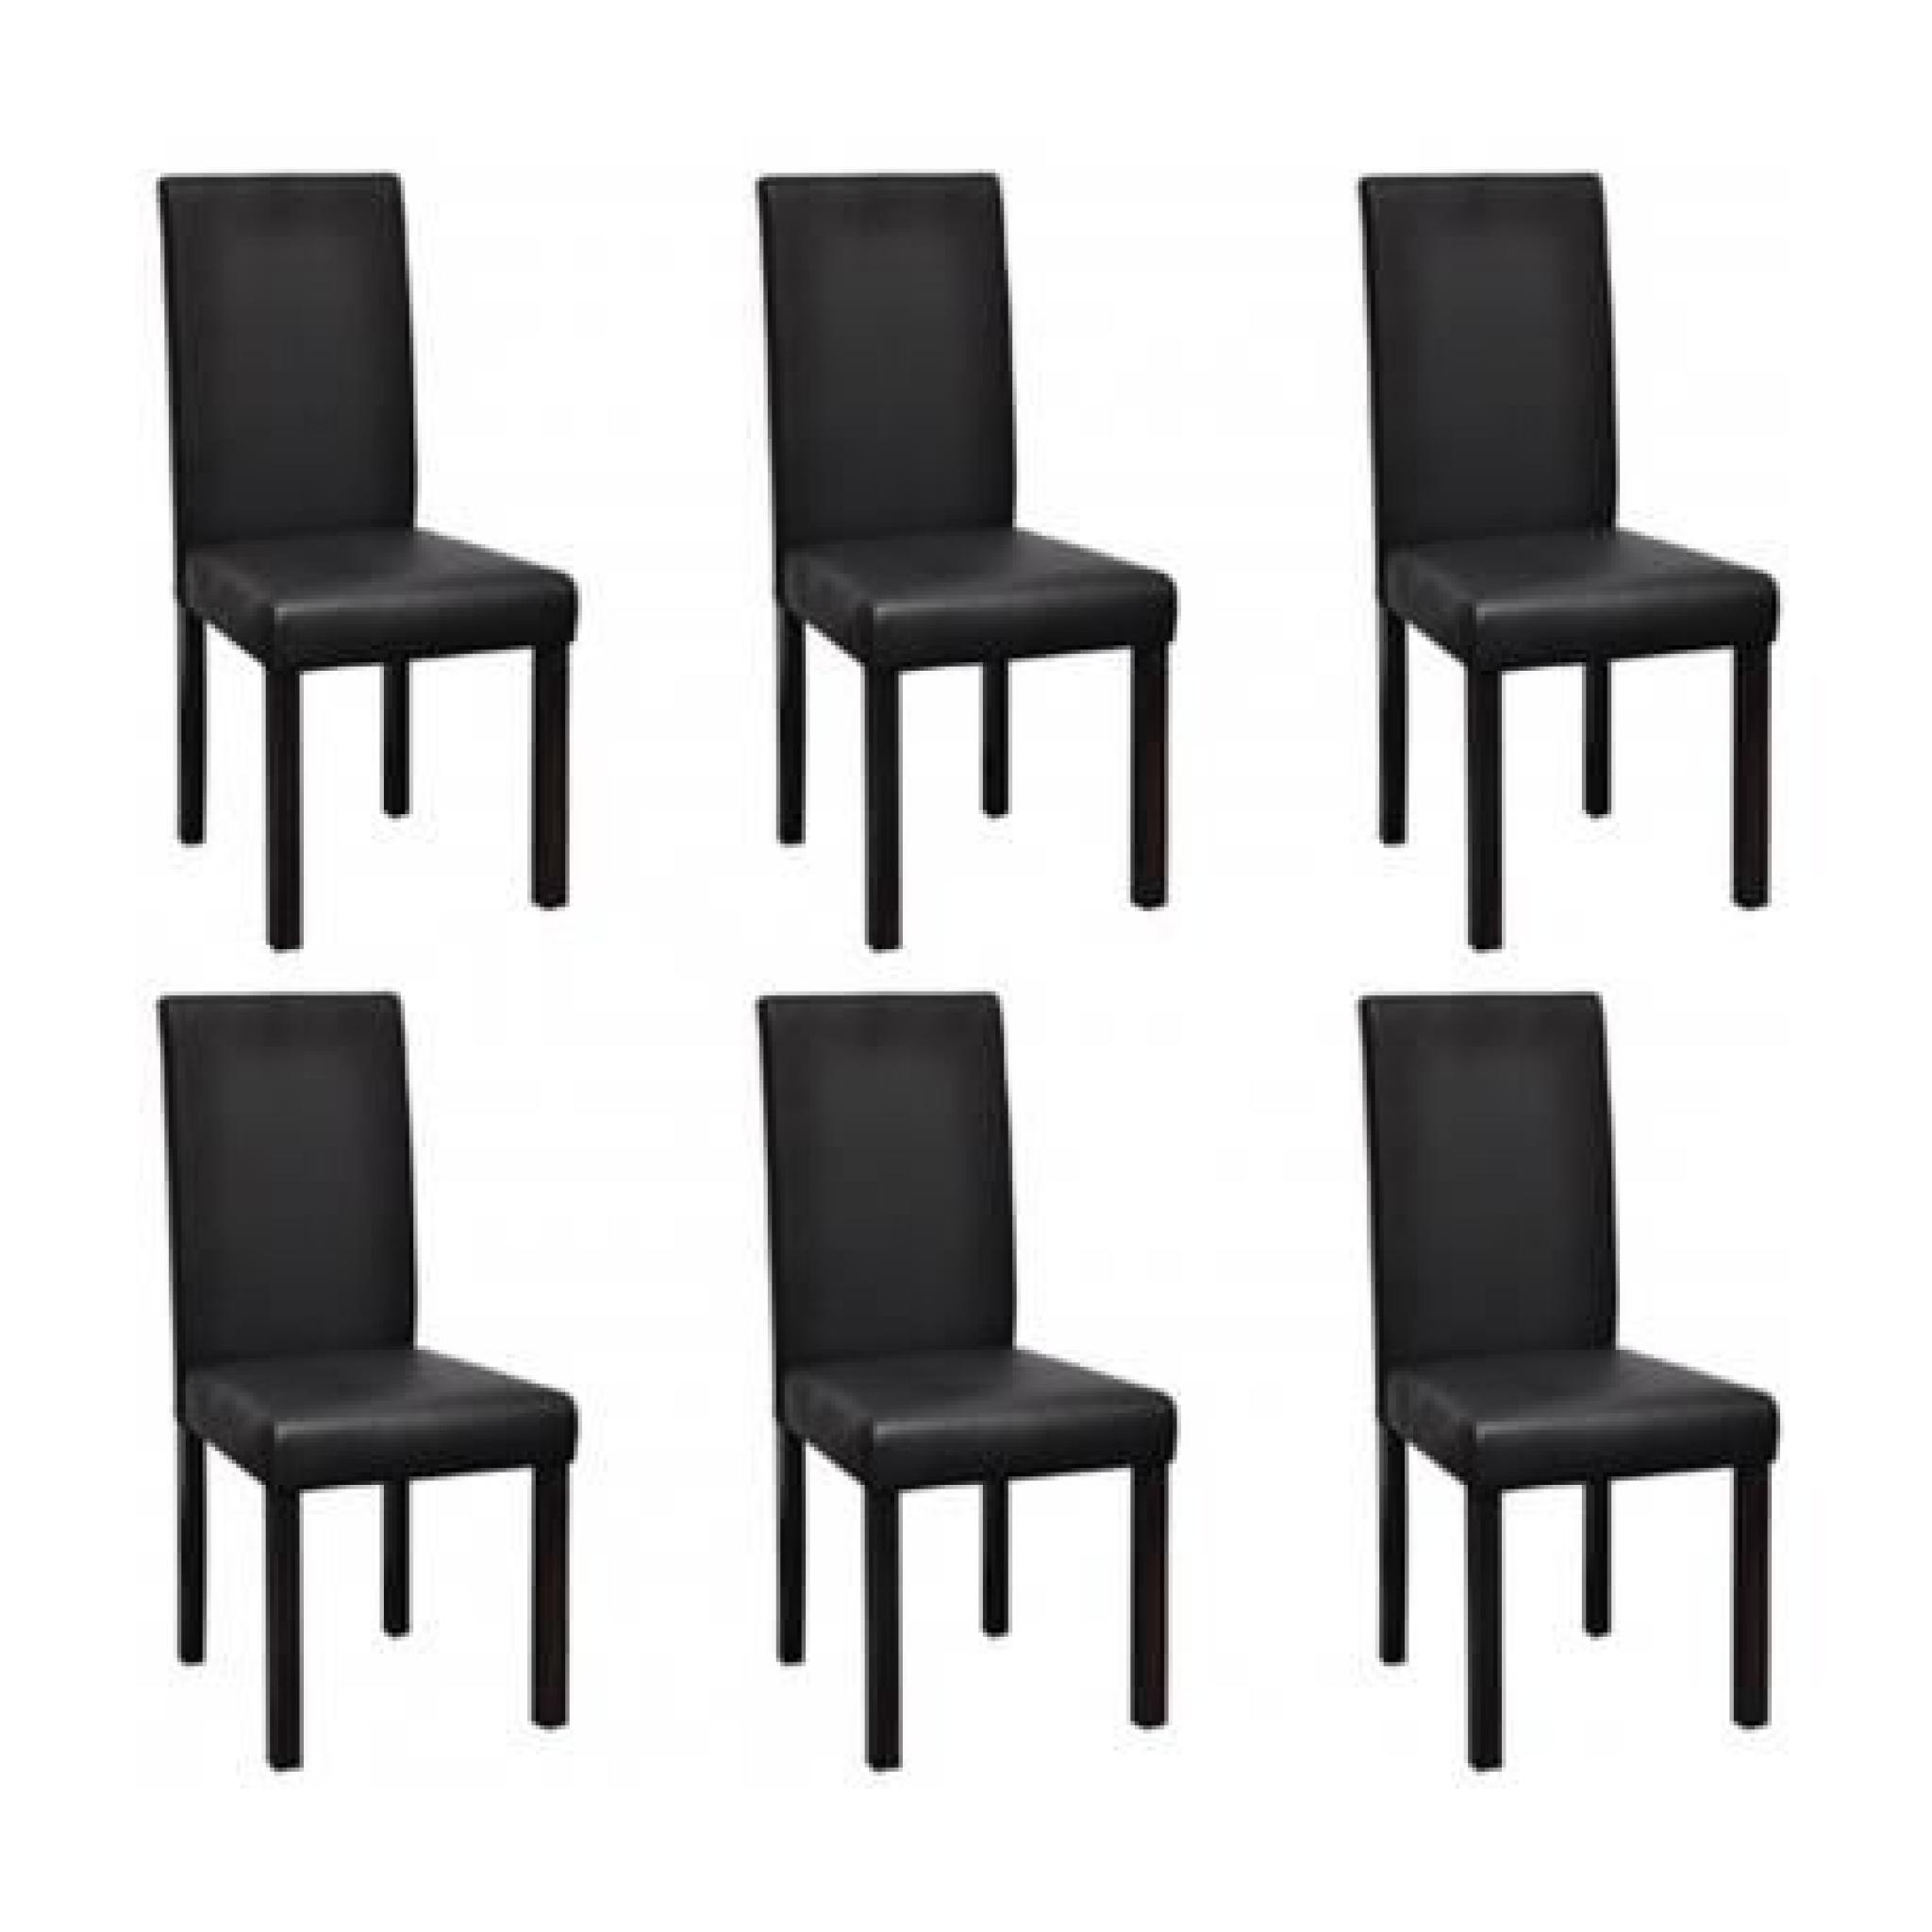 Chaise design colonial noire (lot de 6) Stylashop pas cher